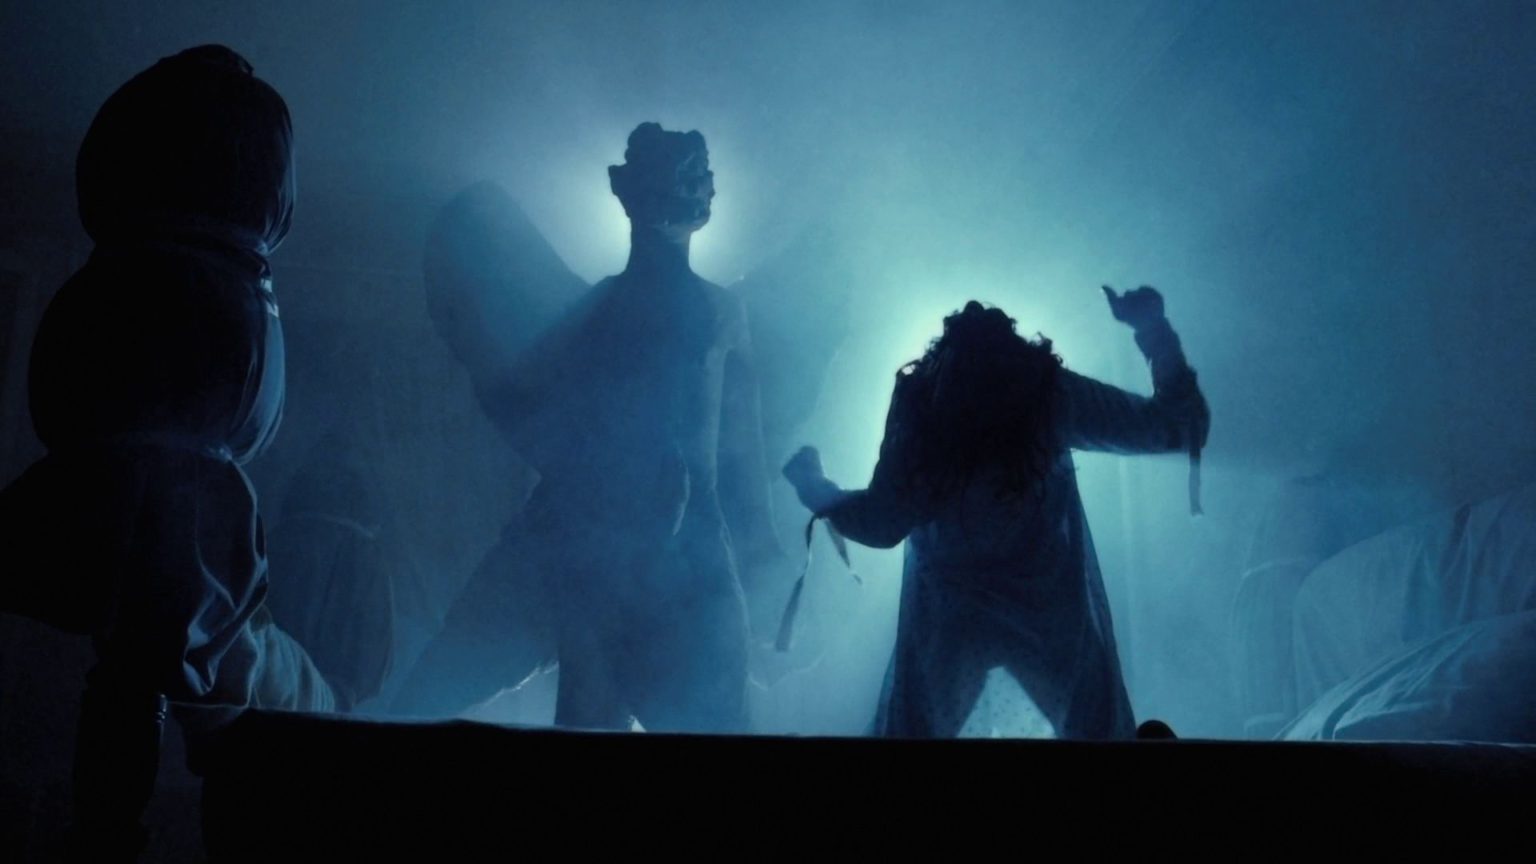 Review de O Exorcista, o clássico filme do gênero terror de 1973.